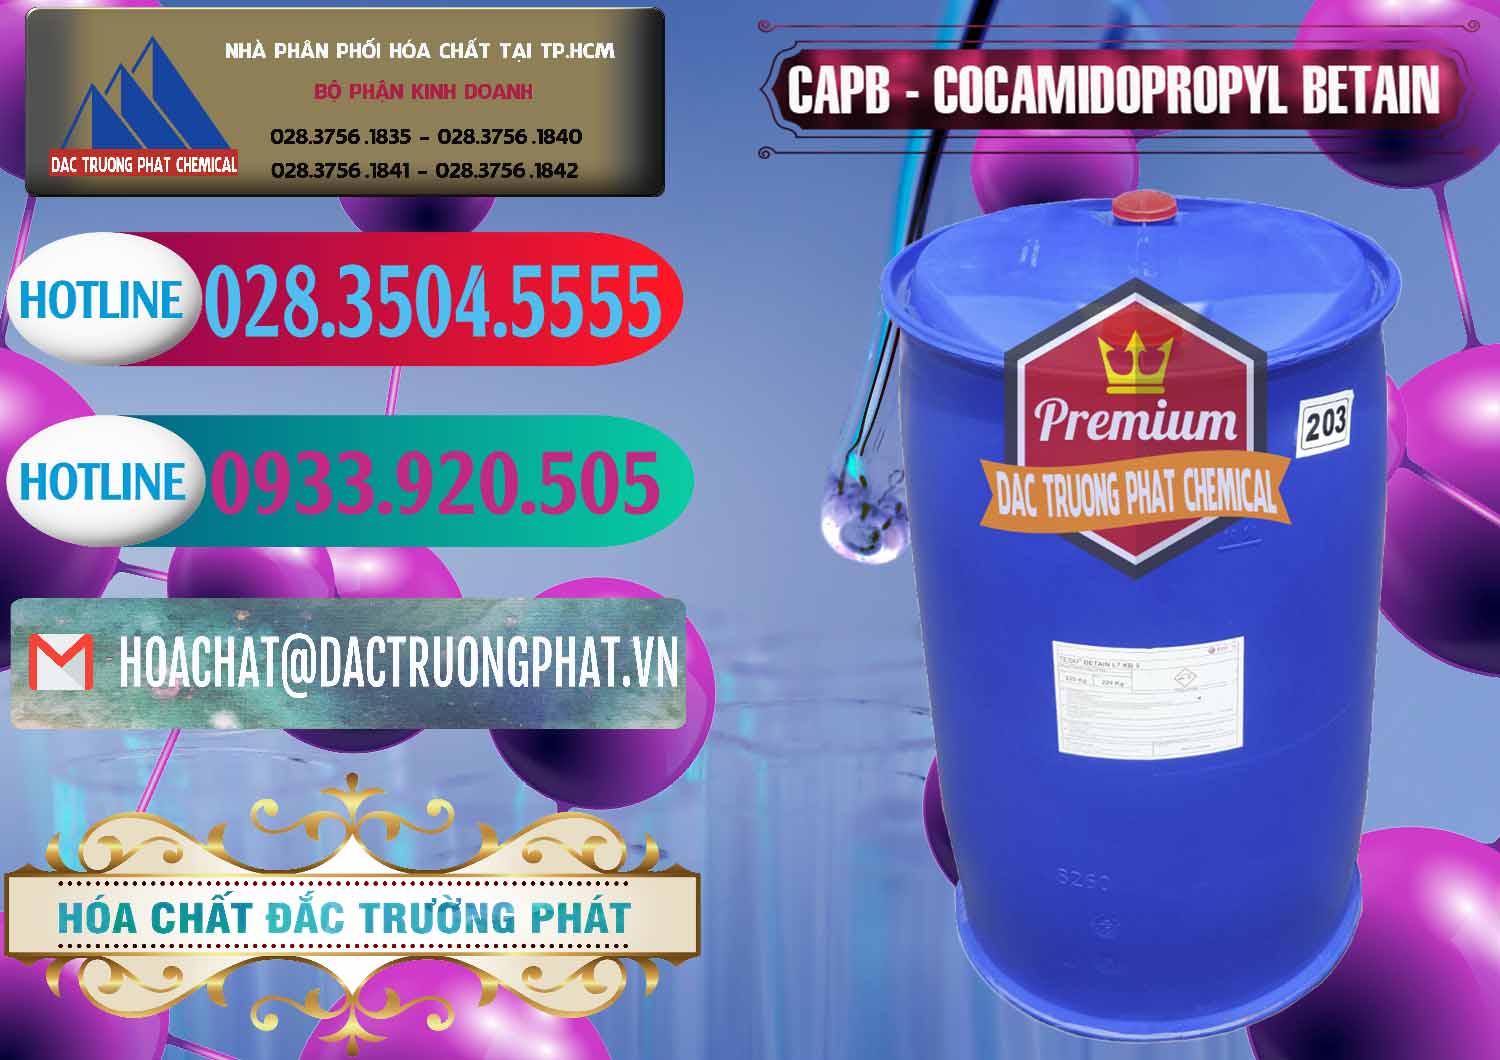 Công ty chuyên cung ứng ( bán ) Cocamidopropyl Betaine - CAPB Tego Indonesia - 0327 - Đơn vị cung cấp và nhập khẩu hóa chất tại TP.HCM - truongphat.vn